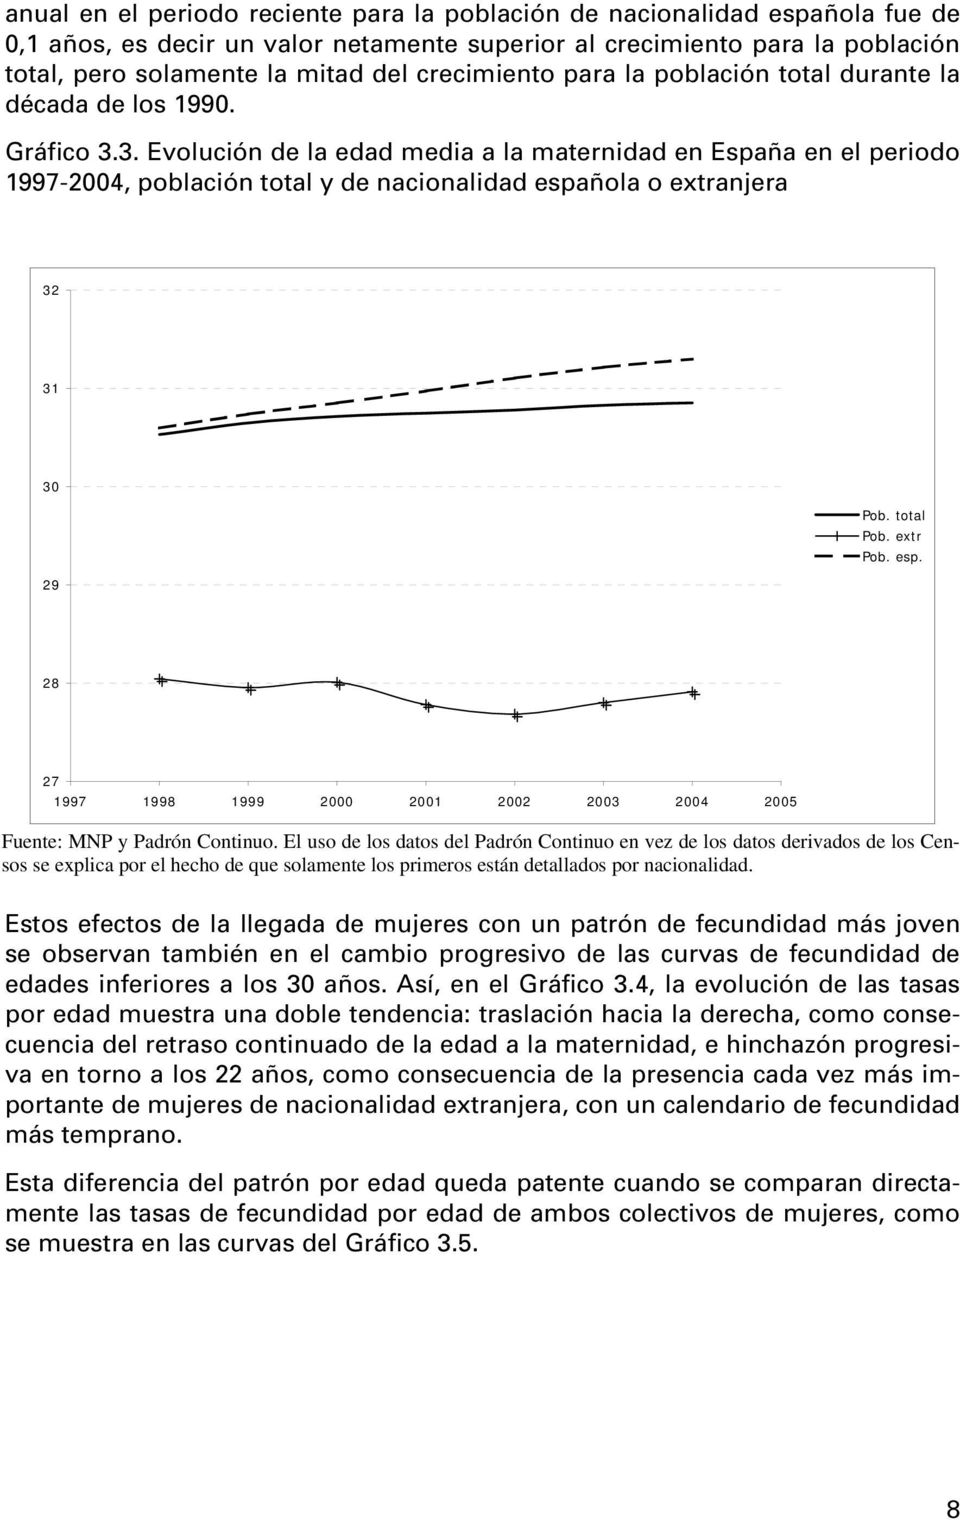 3. Evolución de la edad media a la maternidad en España en el periodo 1997-2004, población total y de nacionalidad espa